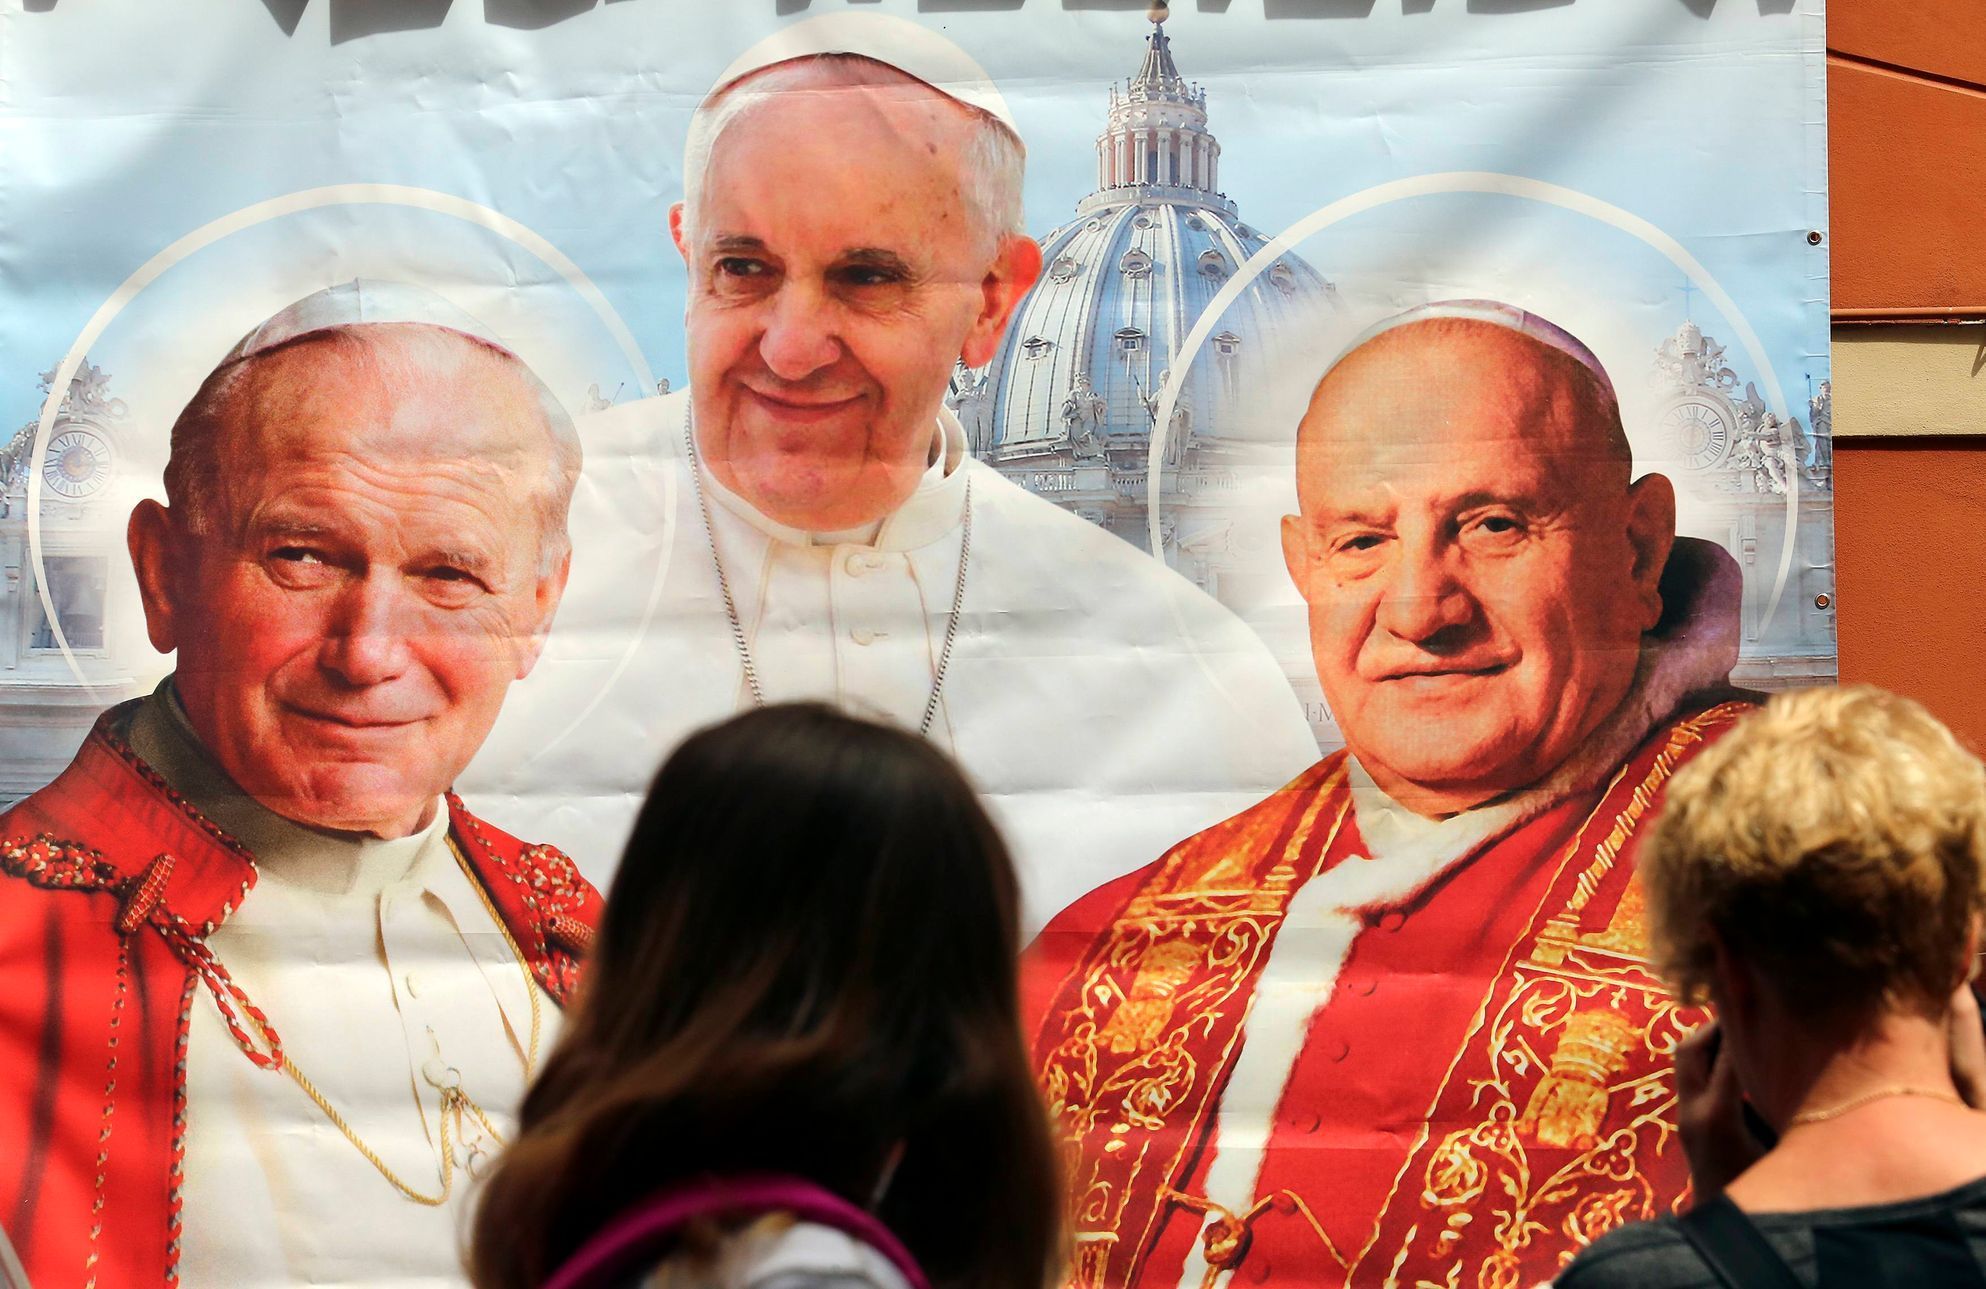 Papežové Jan Pavel II., František  a Jan XXIII. na plakátu v obchodě v Římě